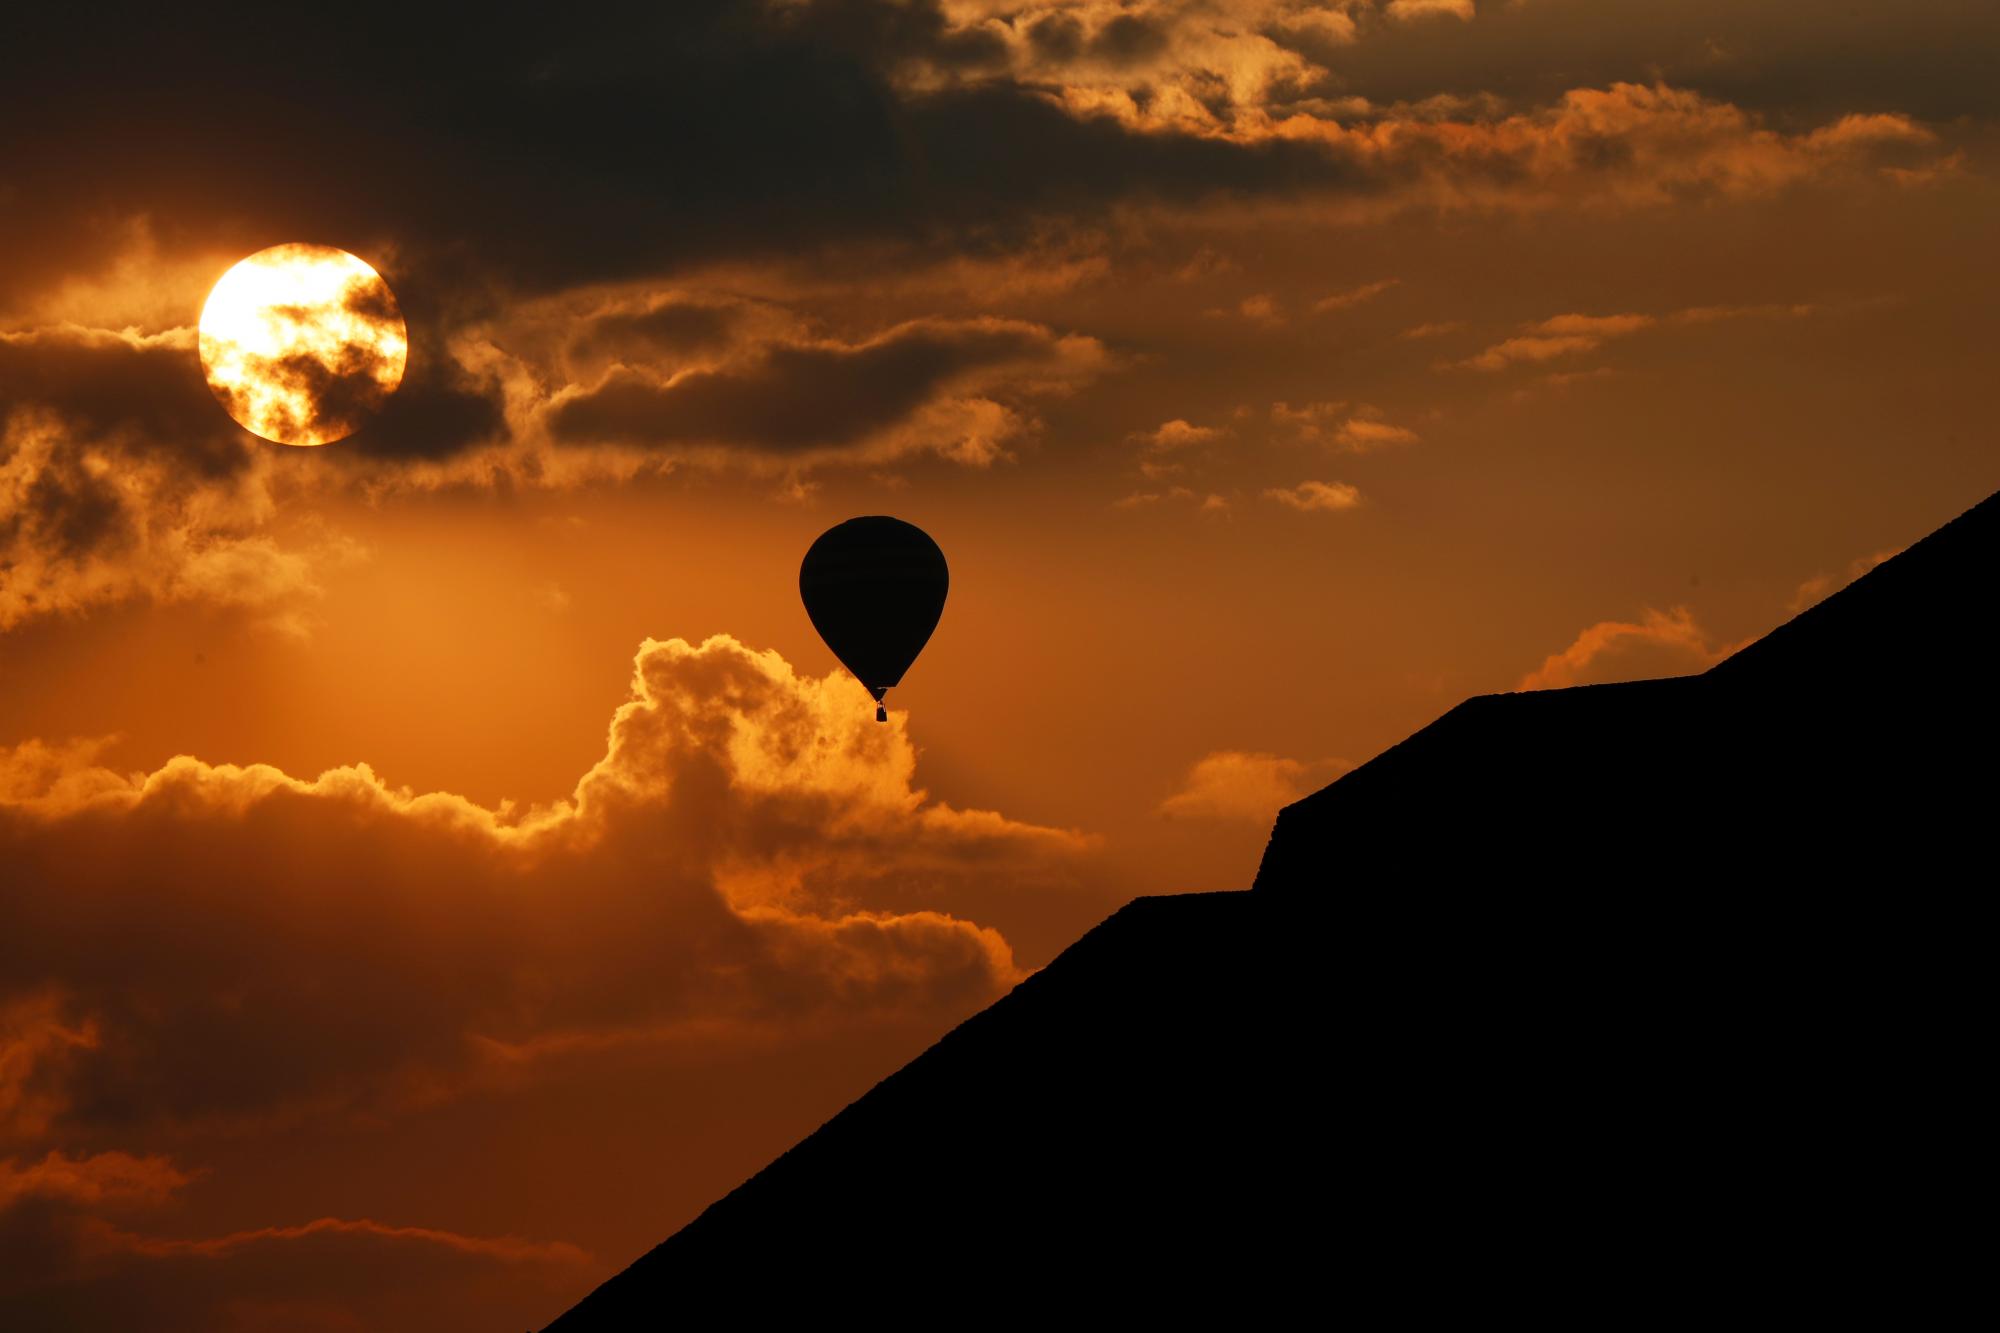 En esta imagen del jueves 21 de marzo de 2019, un globo aerostático vuela cerca de la Pirámide del Sol al amanecer en Teotihuacán, México, durante el equinoccio de primavera.